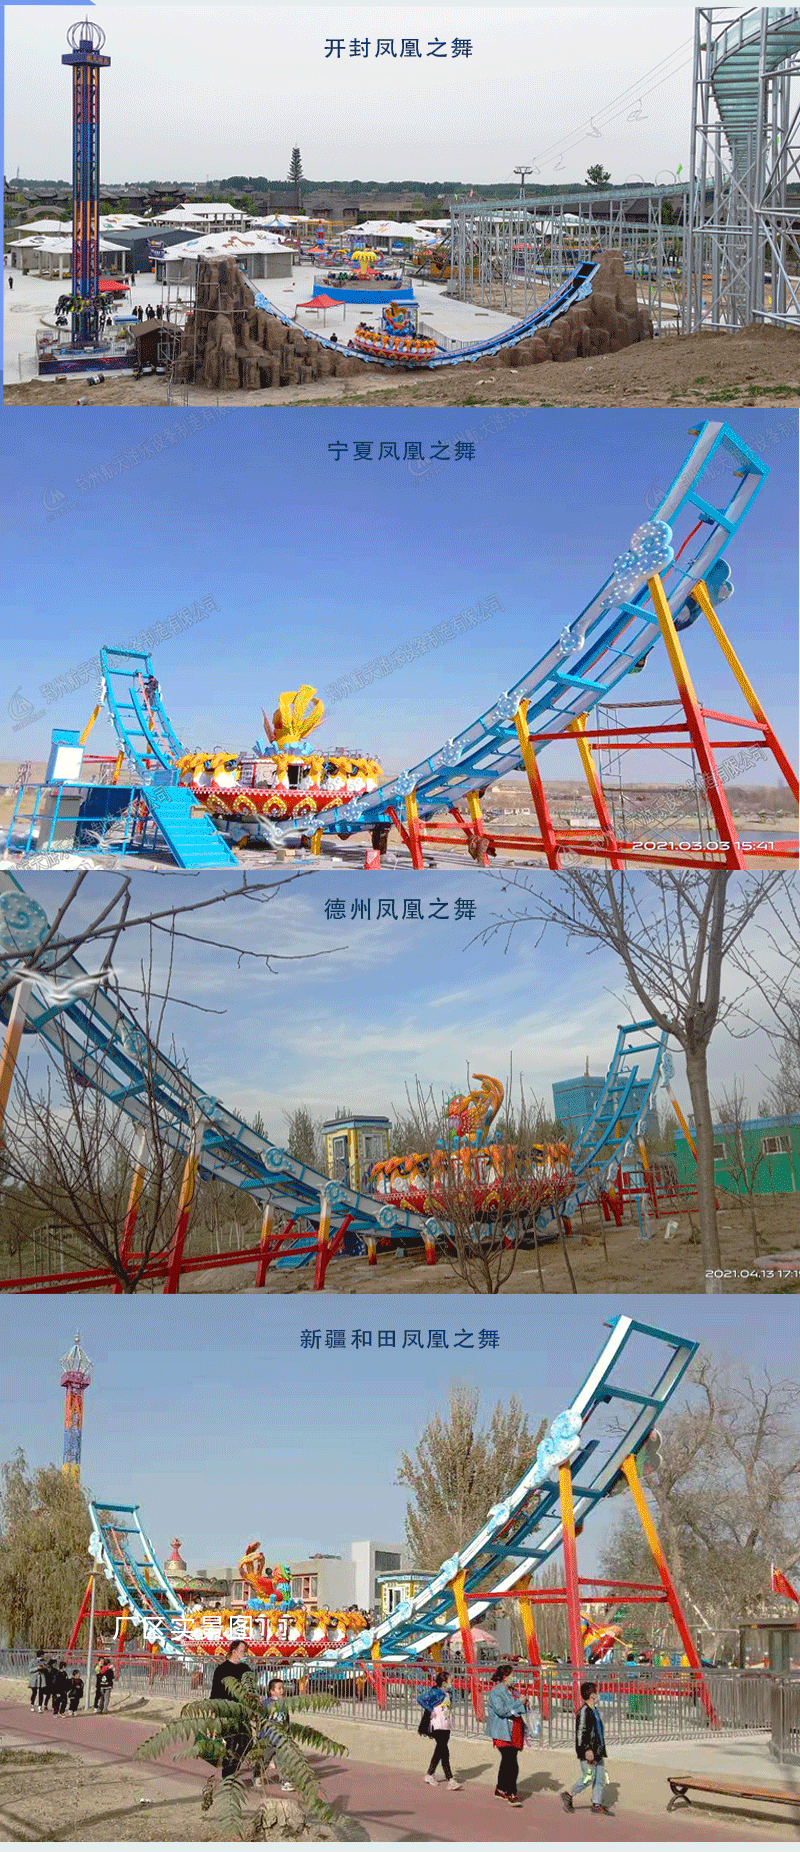 郑州大型太空飞碟游乐园设施航天游乐价格 4